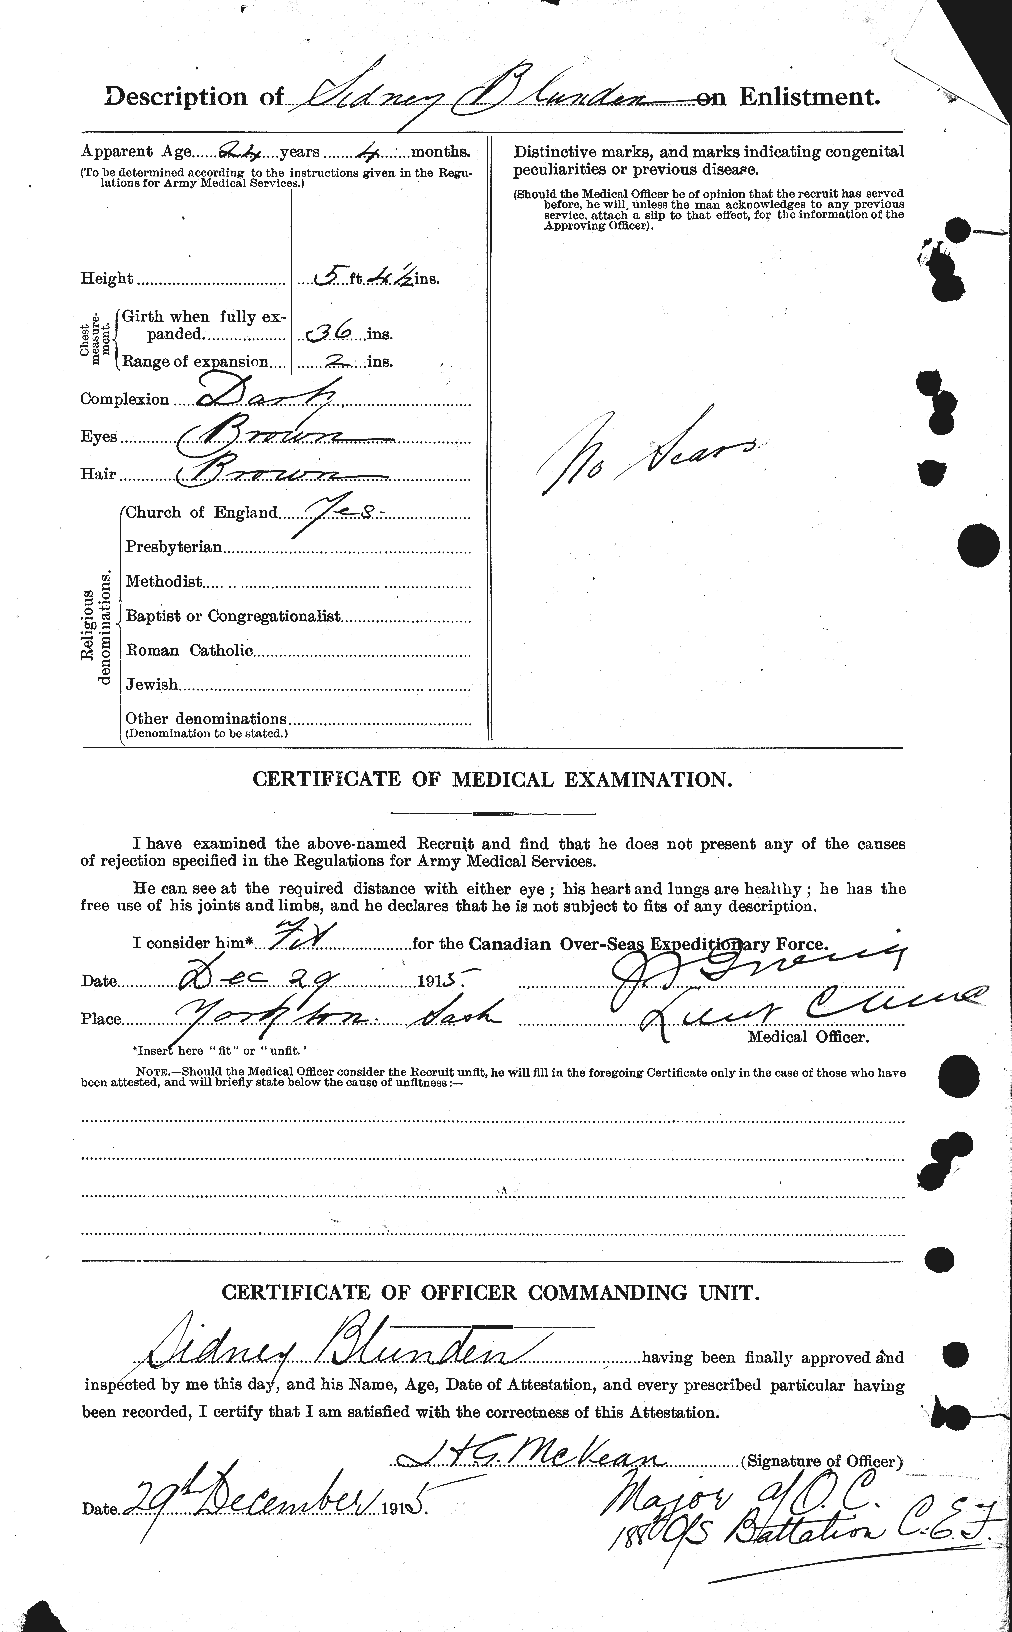 Dossiers du Personnel de la Première Guerre mondiale - CEC 247221b